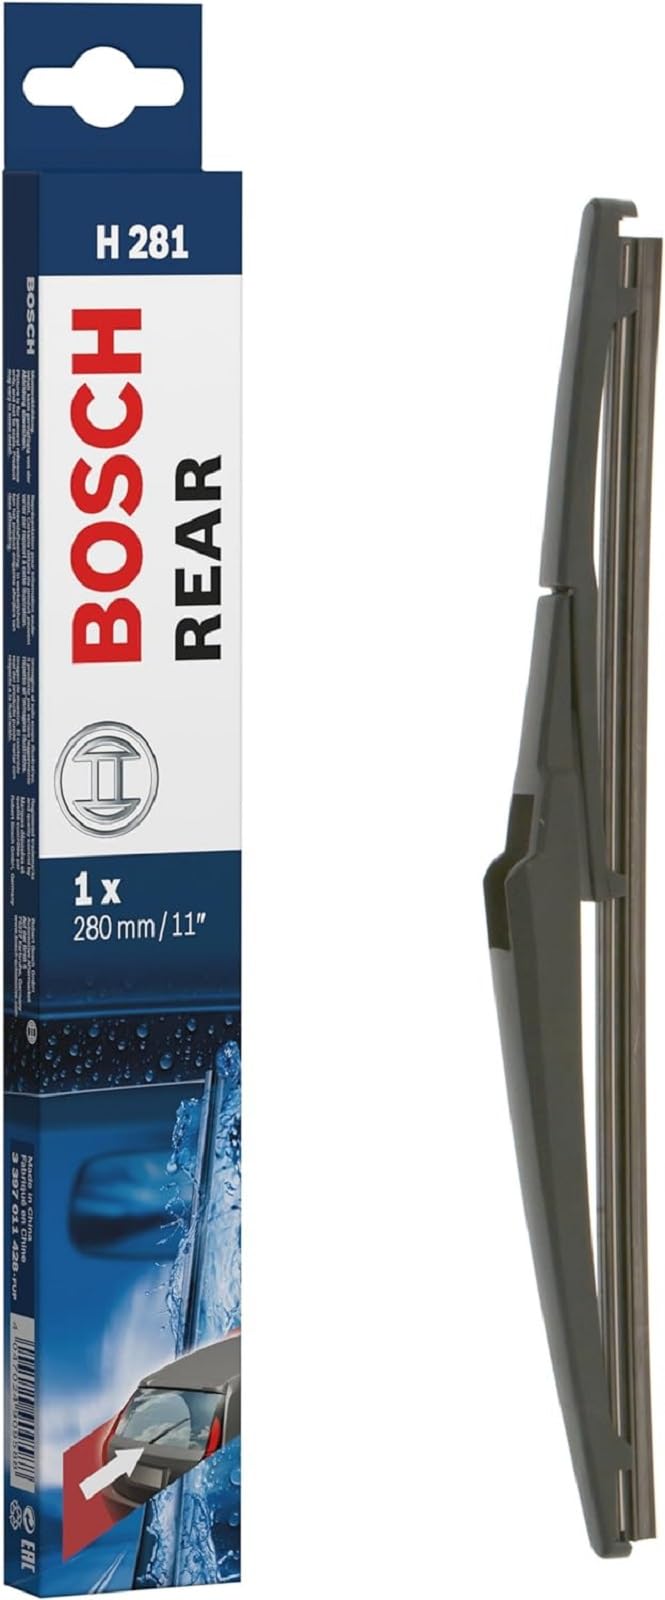 Bosch Scheibenwischer Rear H281, Länge: 280mm – Scheibenwischer für Heckscheibe von Bosch Automotive